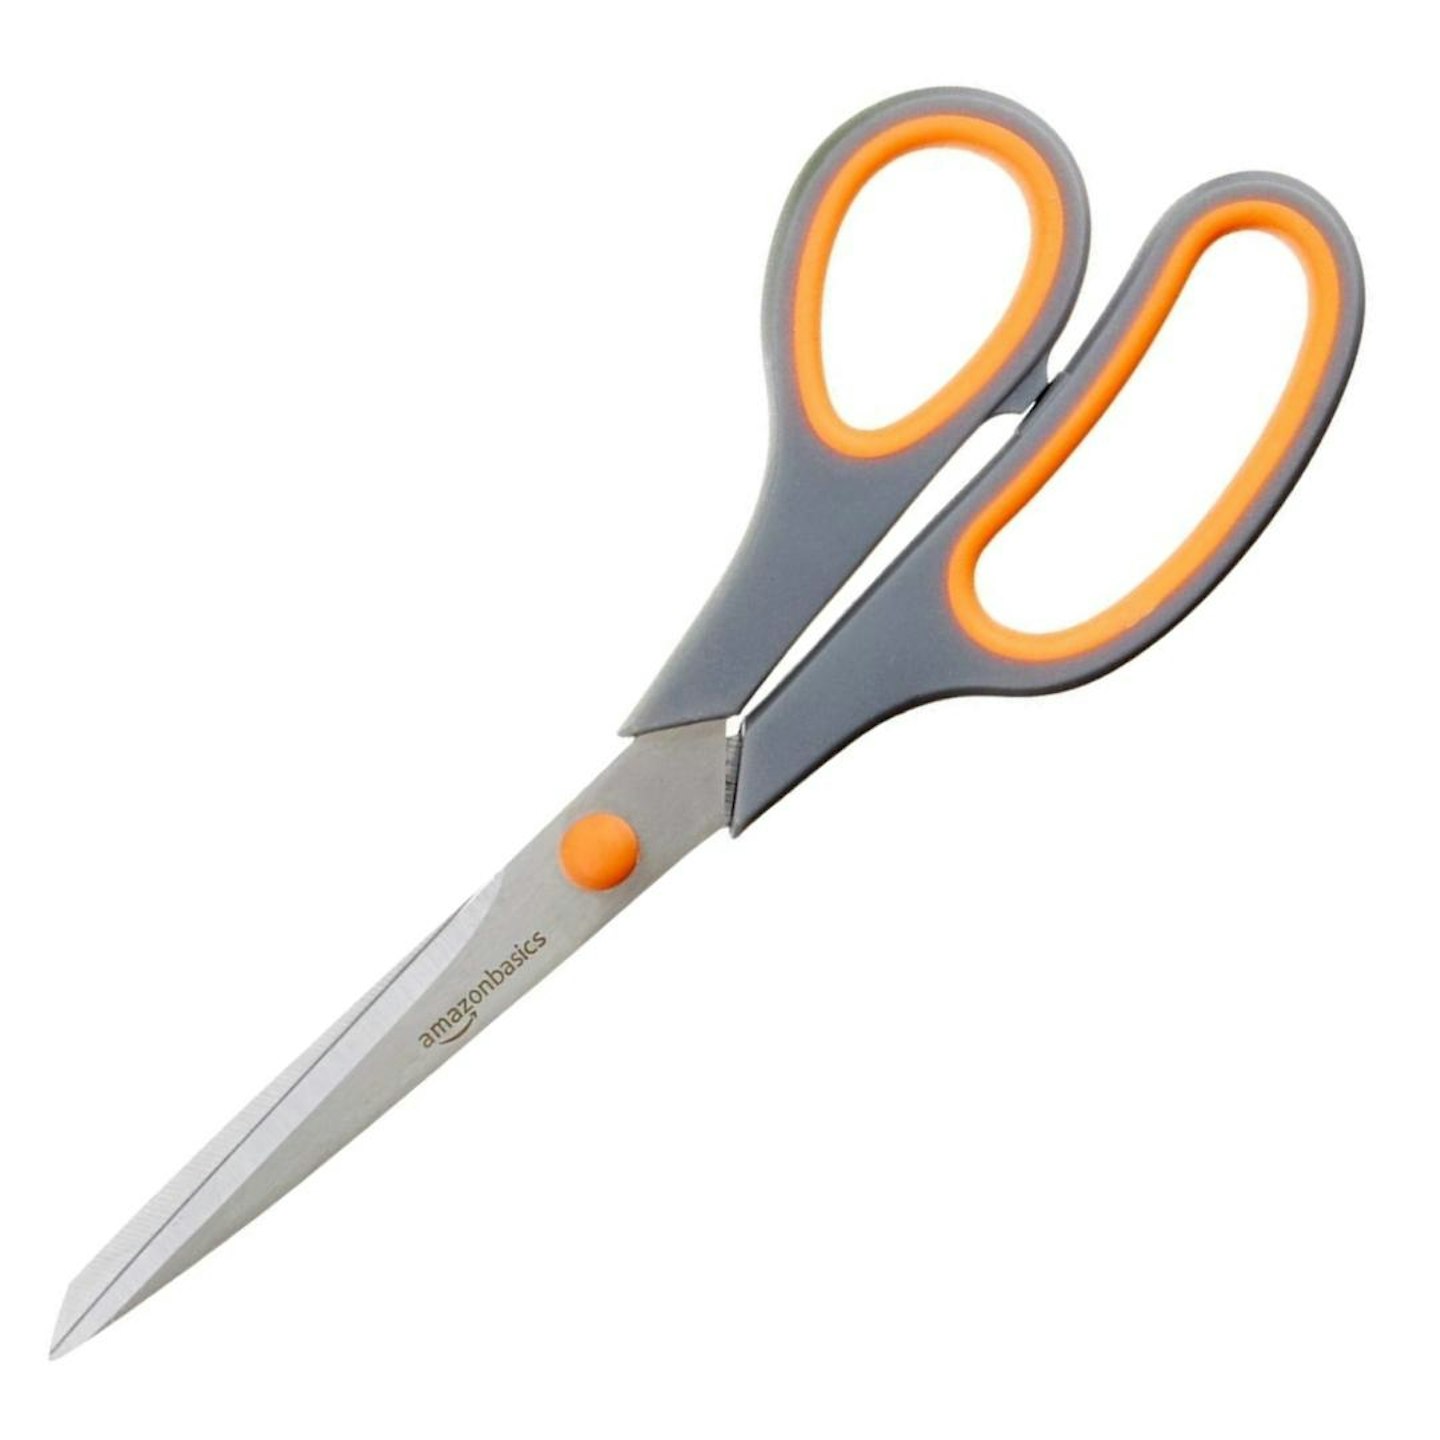 Amazon Basics 20 cm Titanium-Blade Soft-Grip Scissors